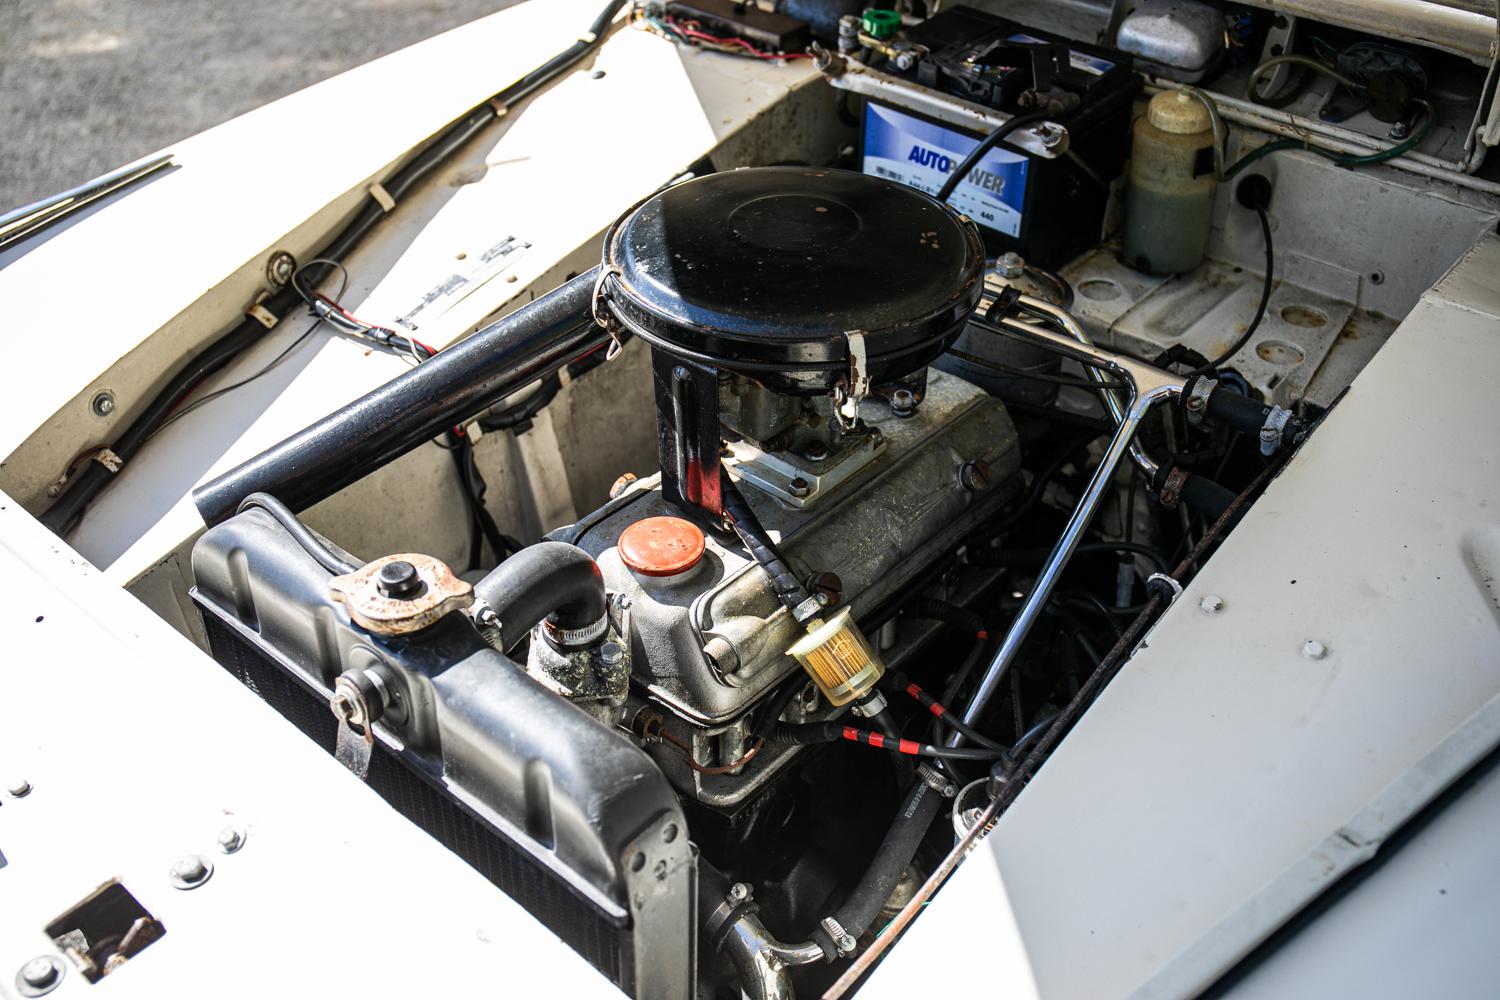 1959 Borgward Isabella Coupe